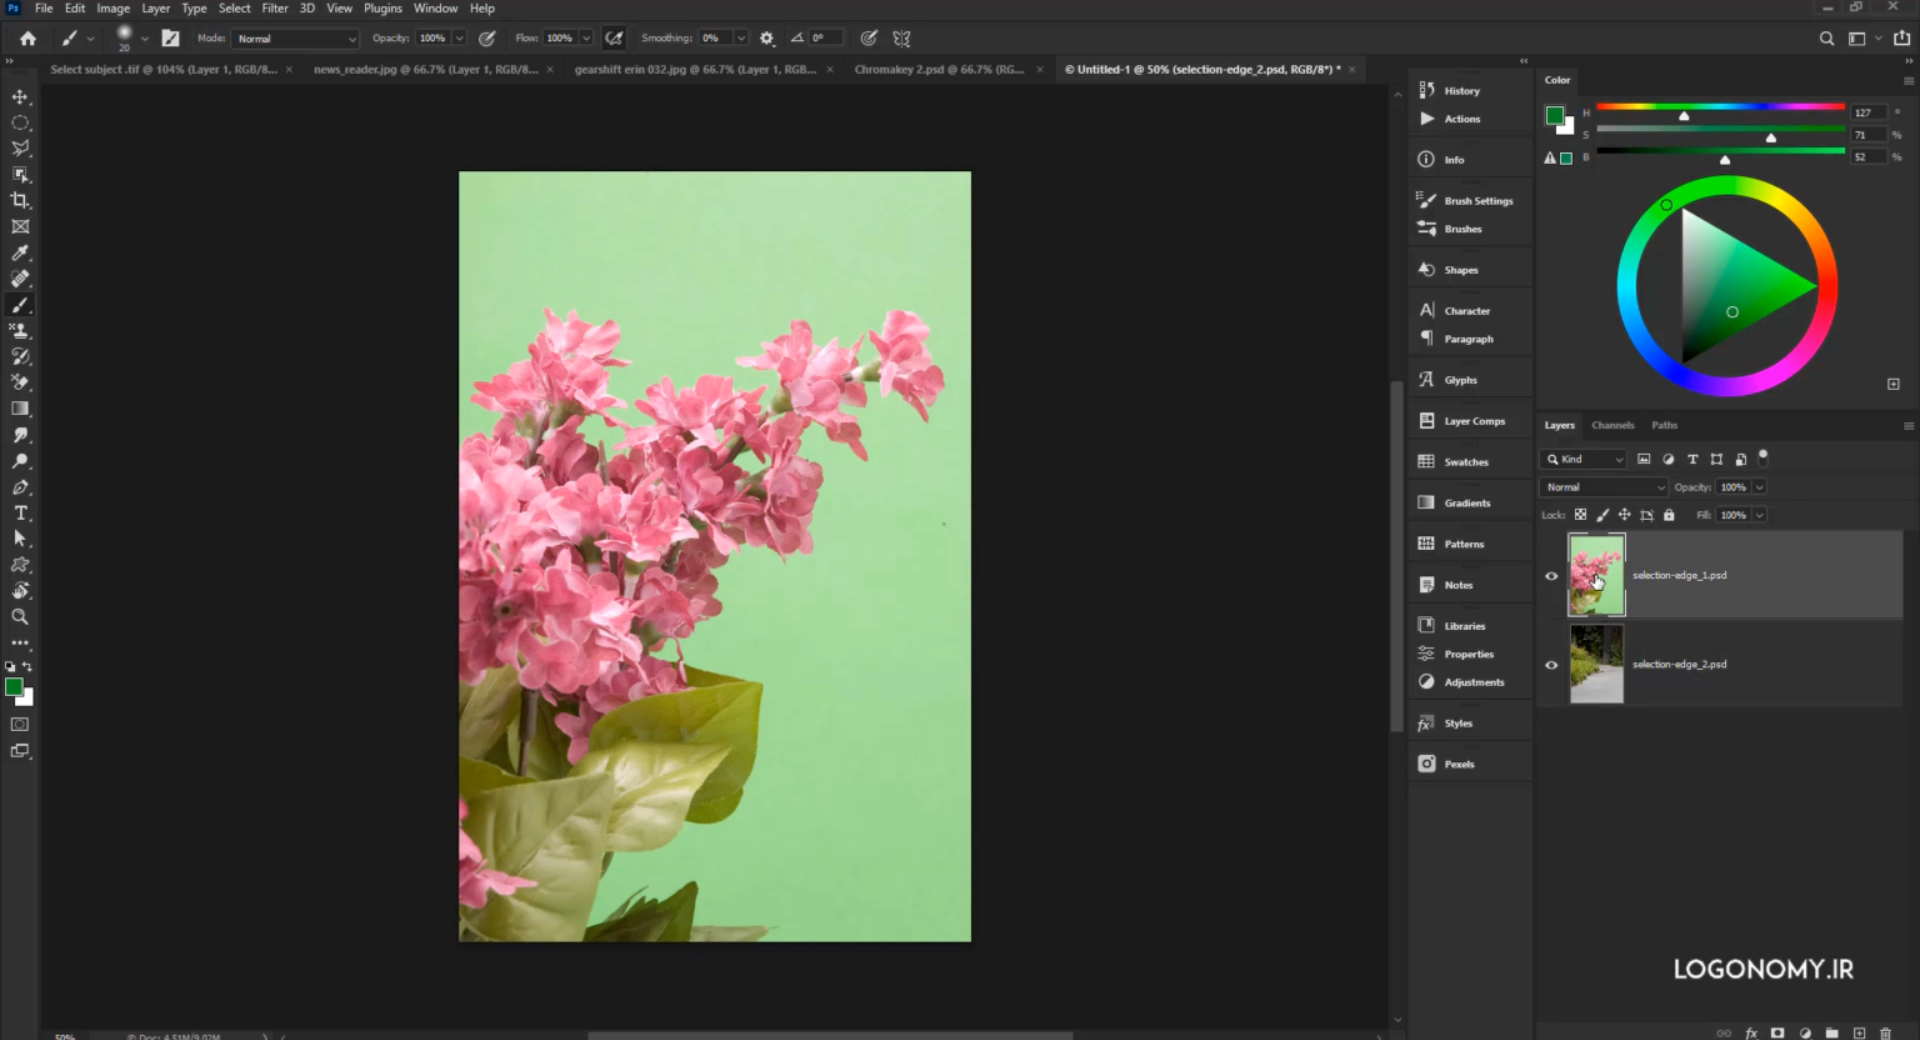 آشنایی با ابزار Color Range برای حذف پس زمینه تصاویر در برنامه فتوشاپ